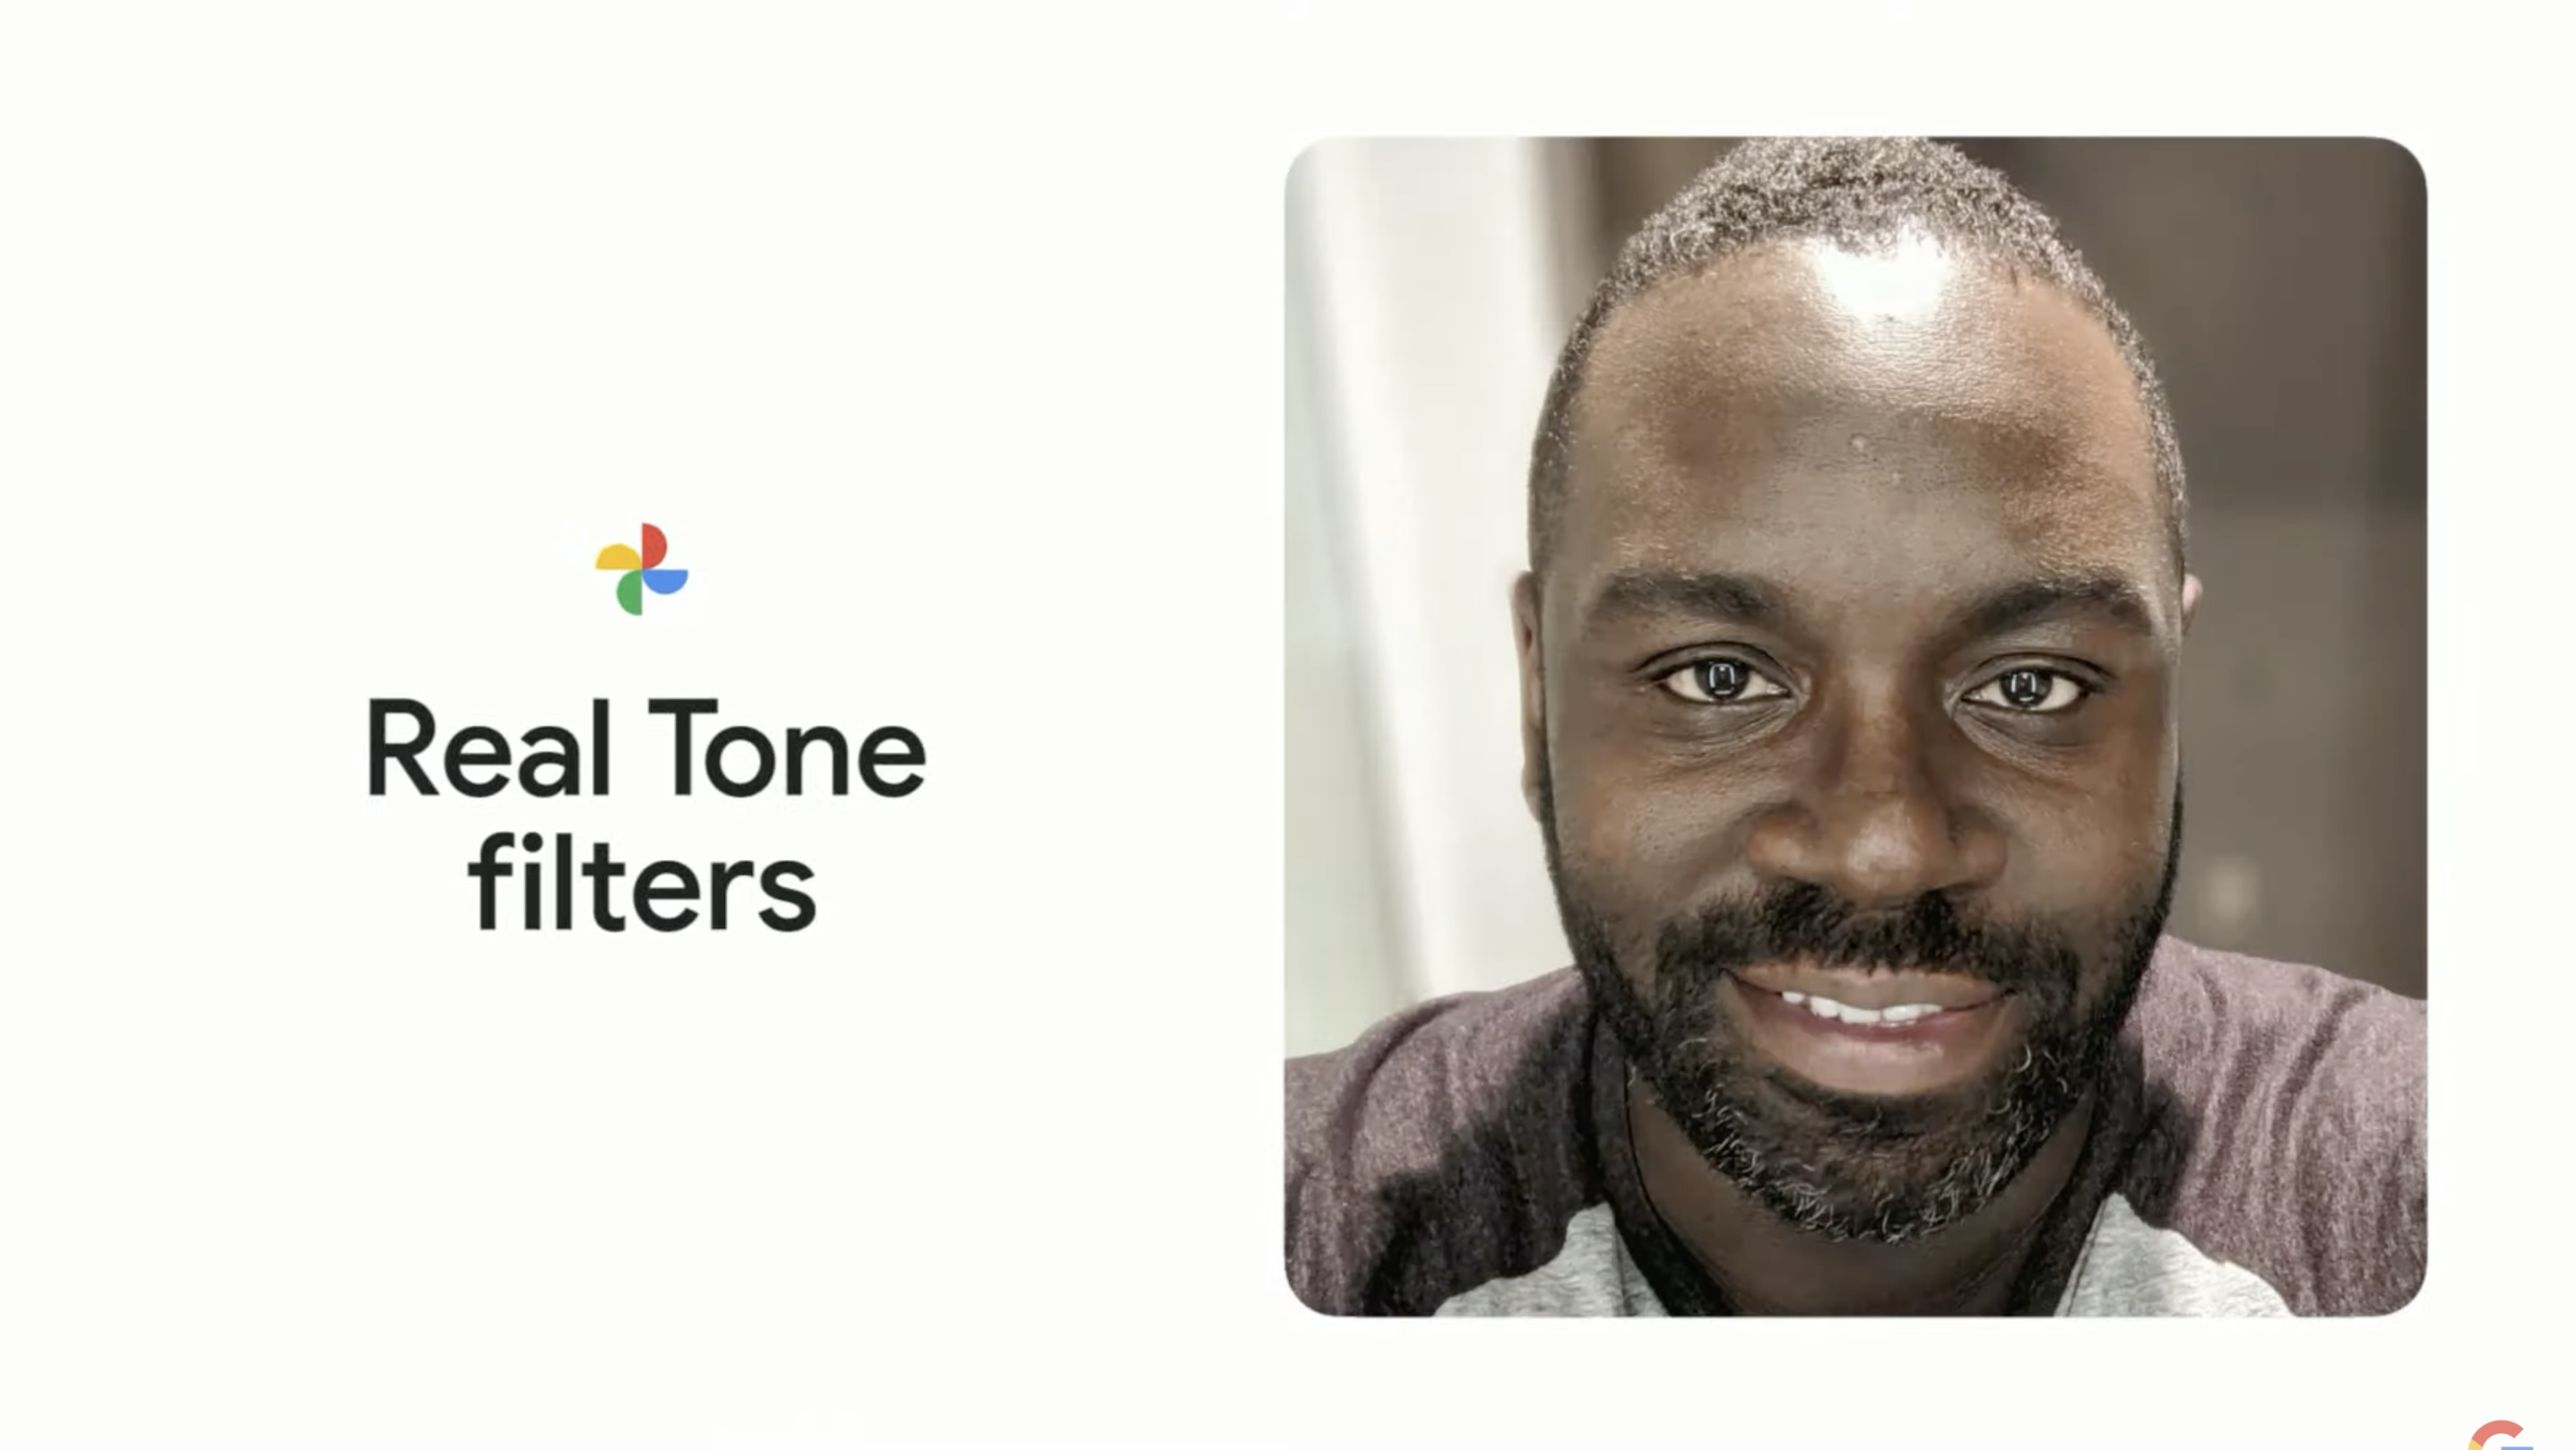 Real Tone Filters at Google IO 2022